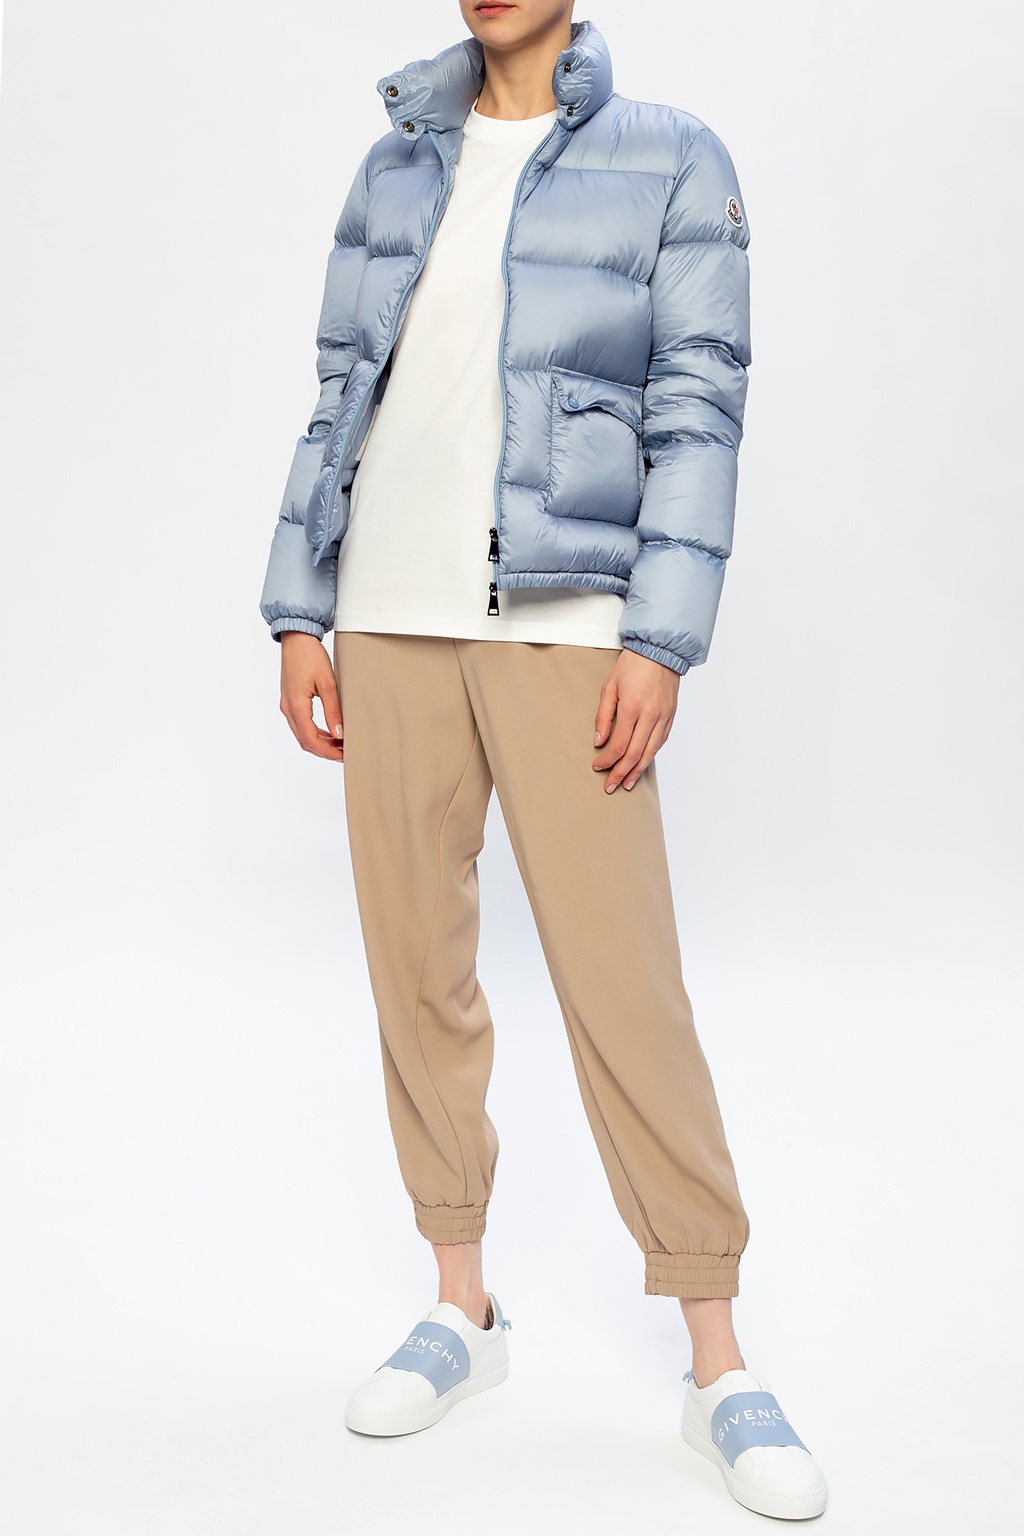 IetpShops Italy - Giorgio Armani blouson silk-cotton blend jacket